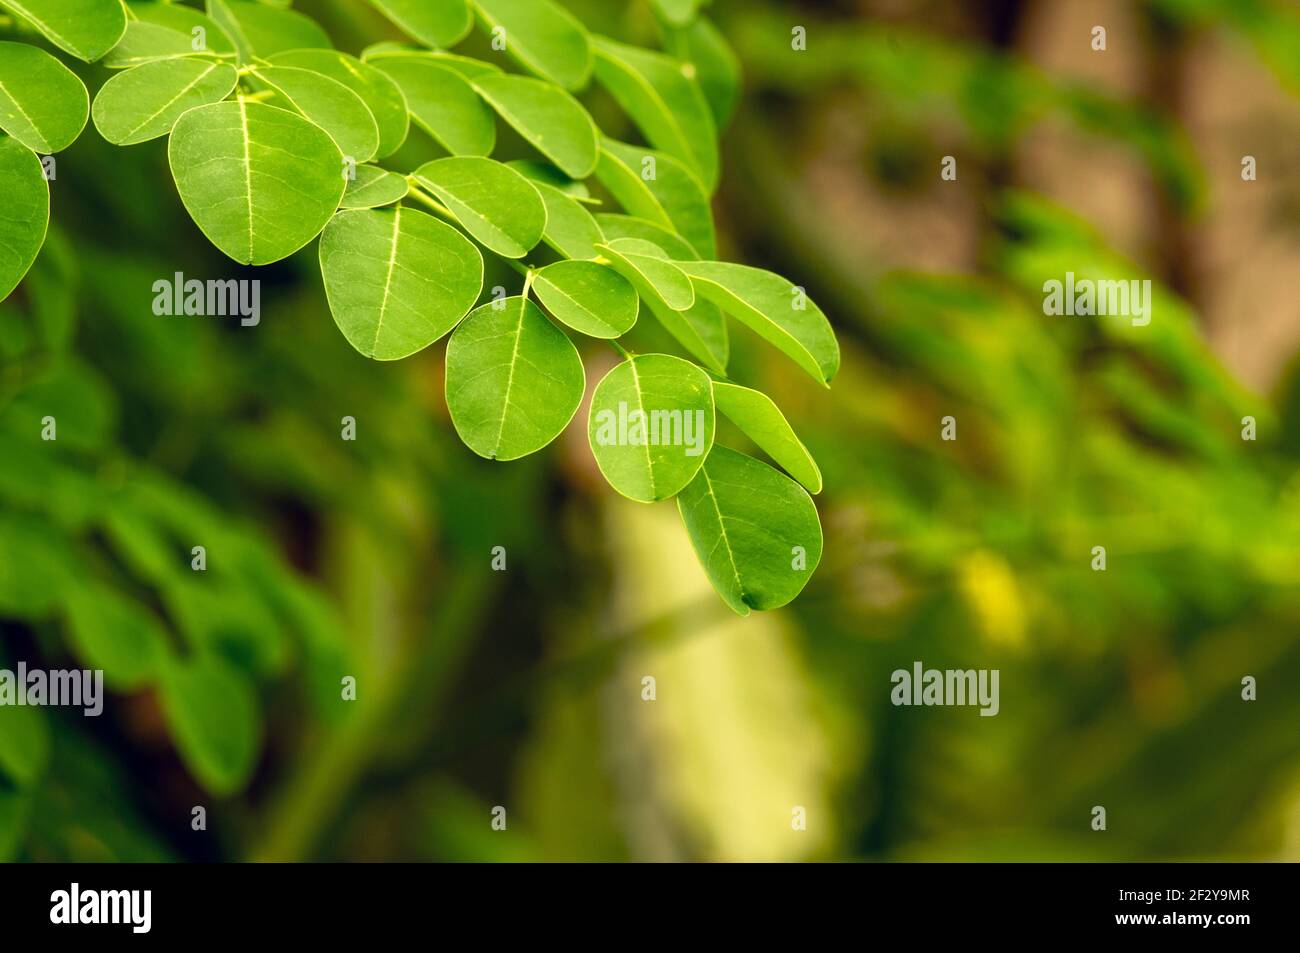 Kelor oder Drumstick Baum, Moringa oleifera, grüne Blätter, mit gemeinsamen Namen Meerrettich Baum, und ben Ölbaum oder Benzolive Baum Stockfoto